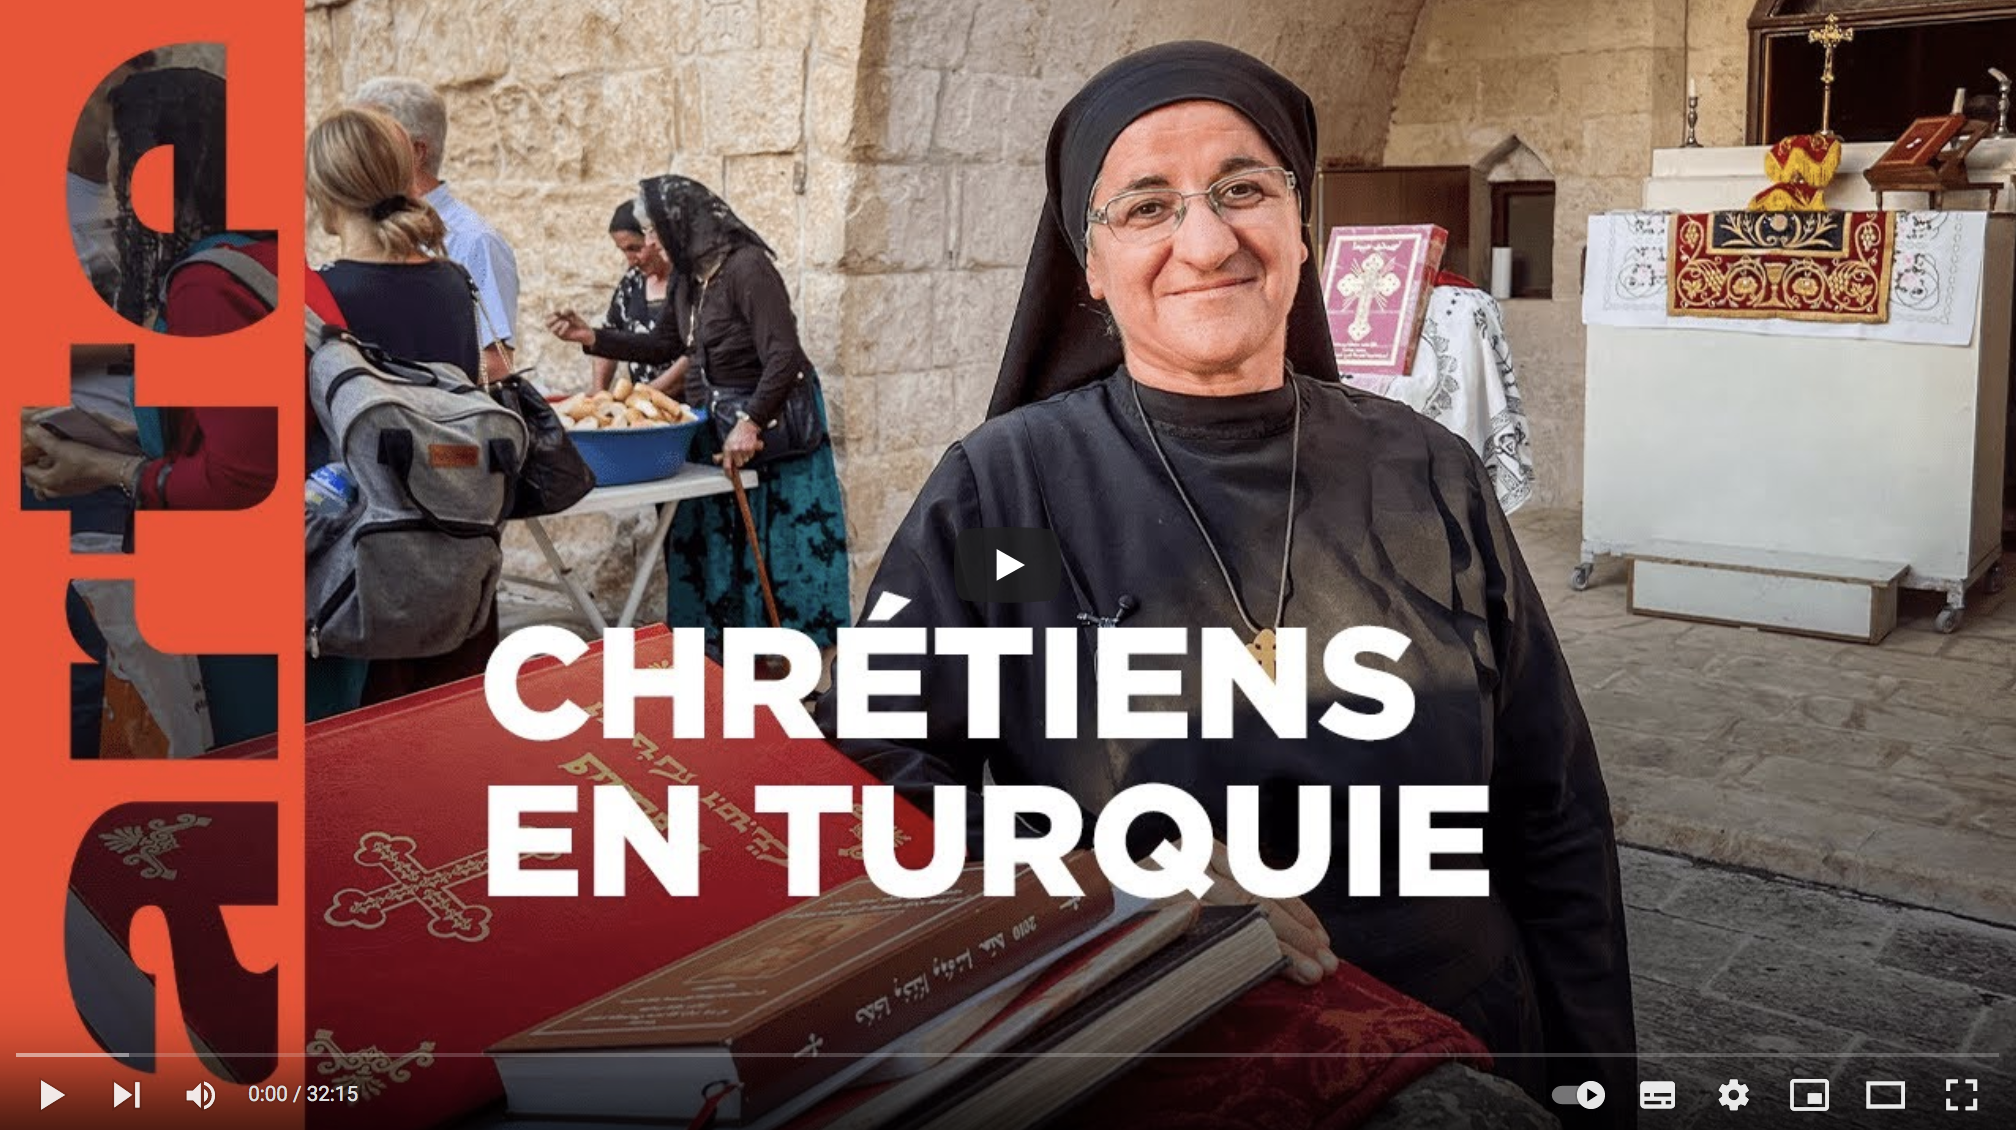 La minorité chrétienne de retour en Turquie (REPORTAGE)